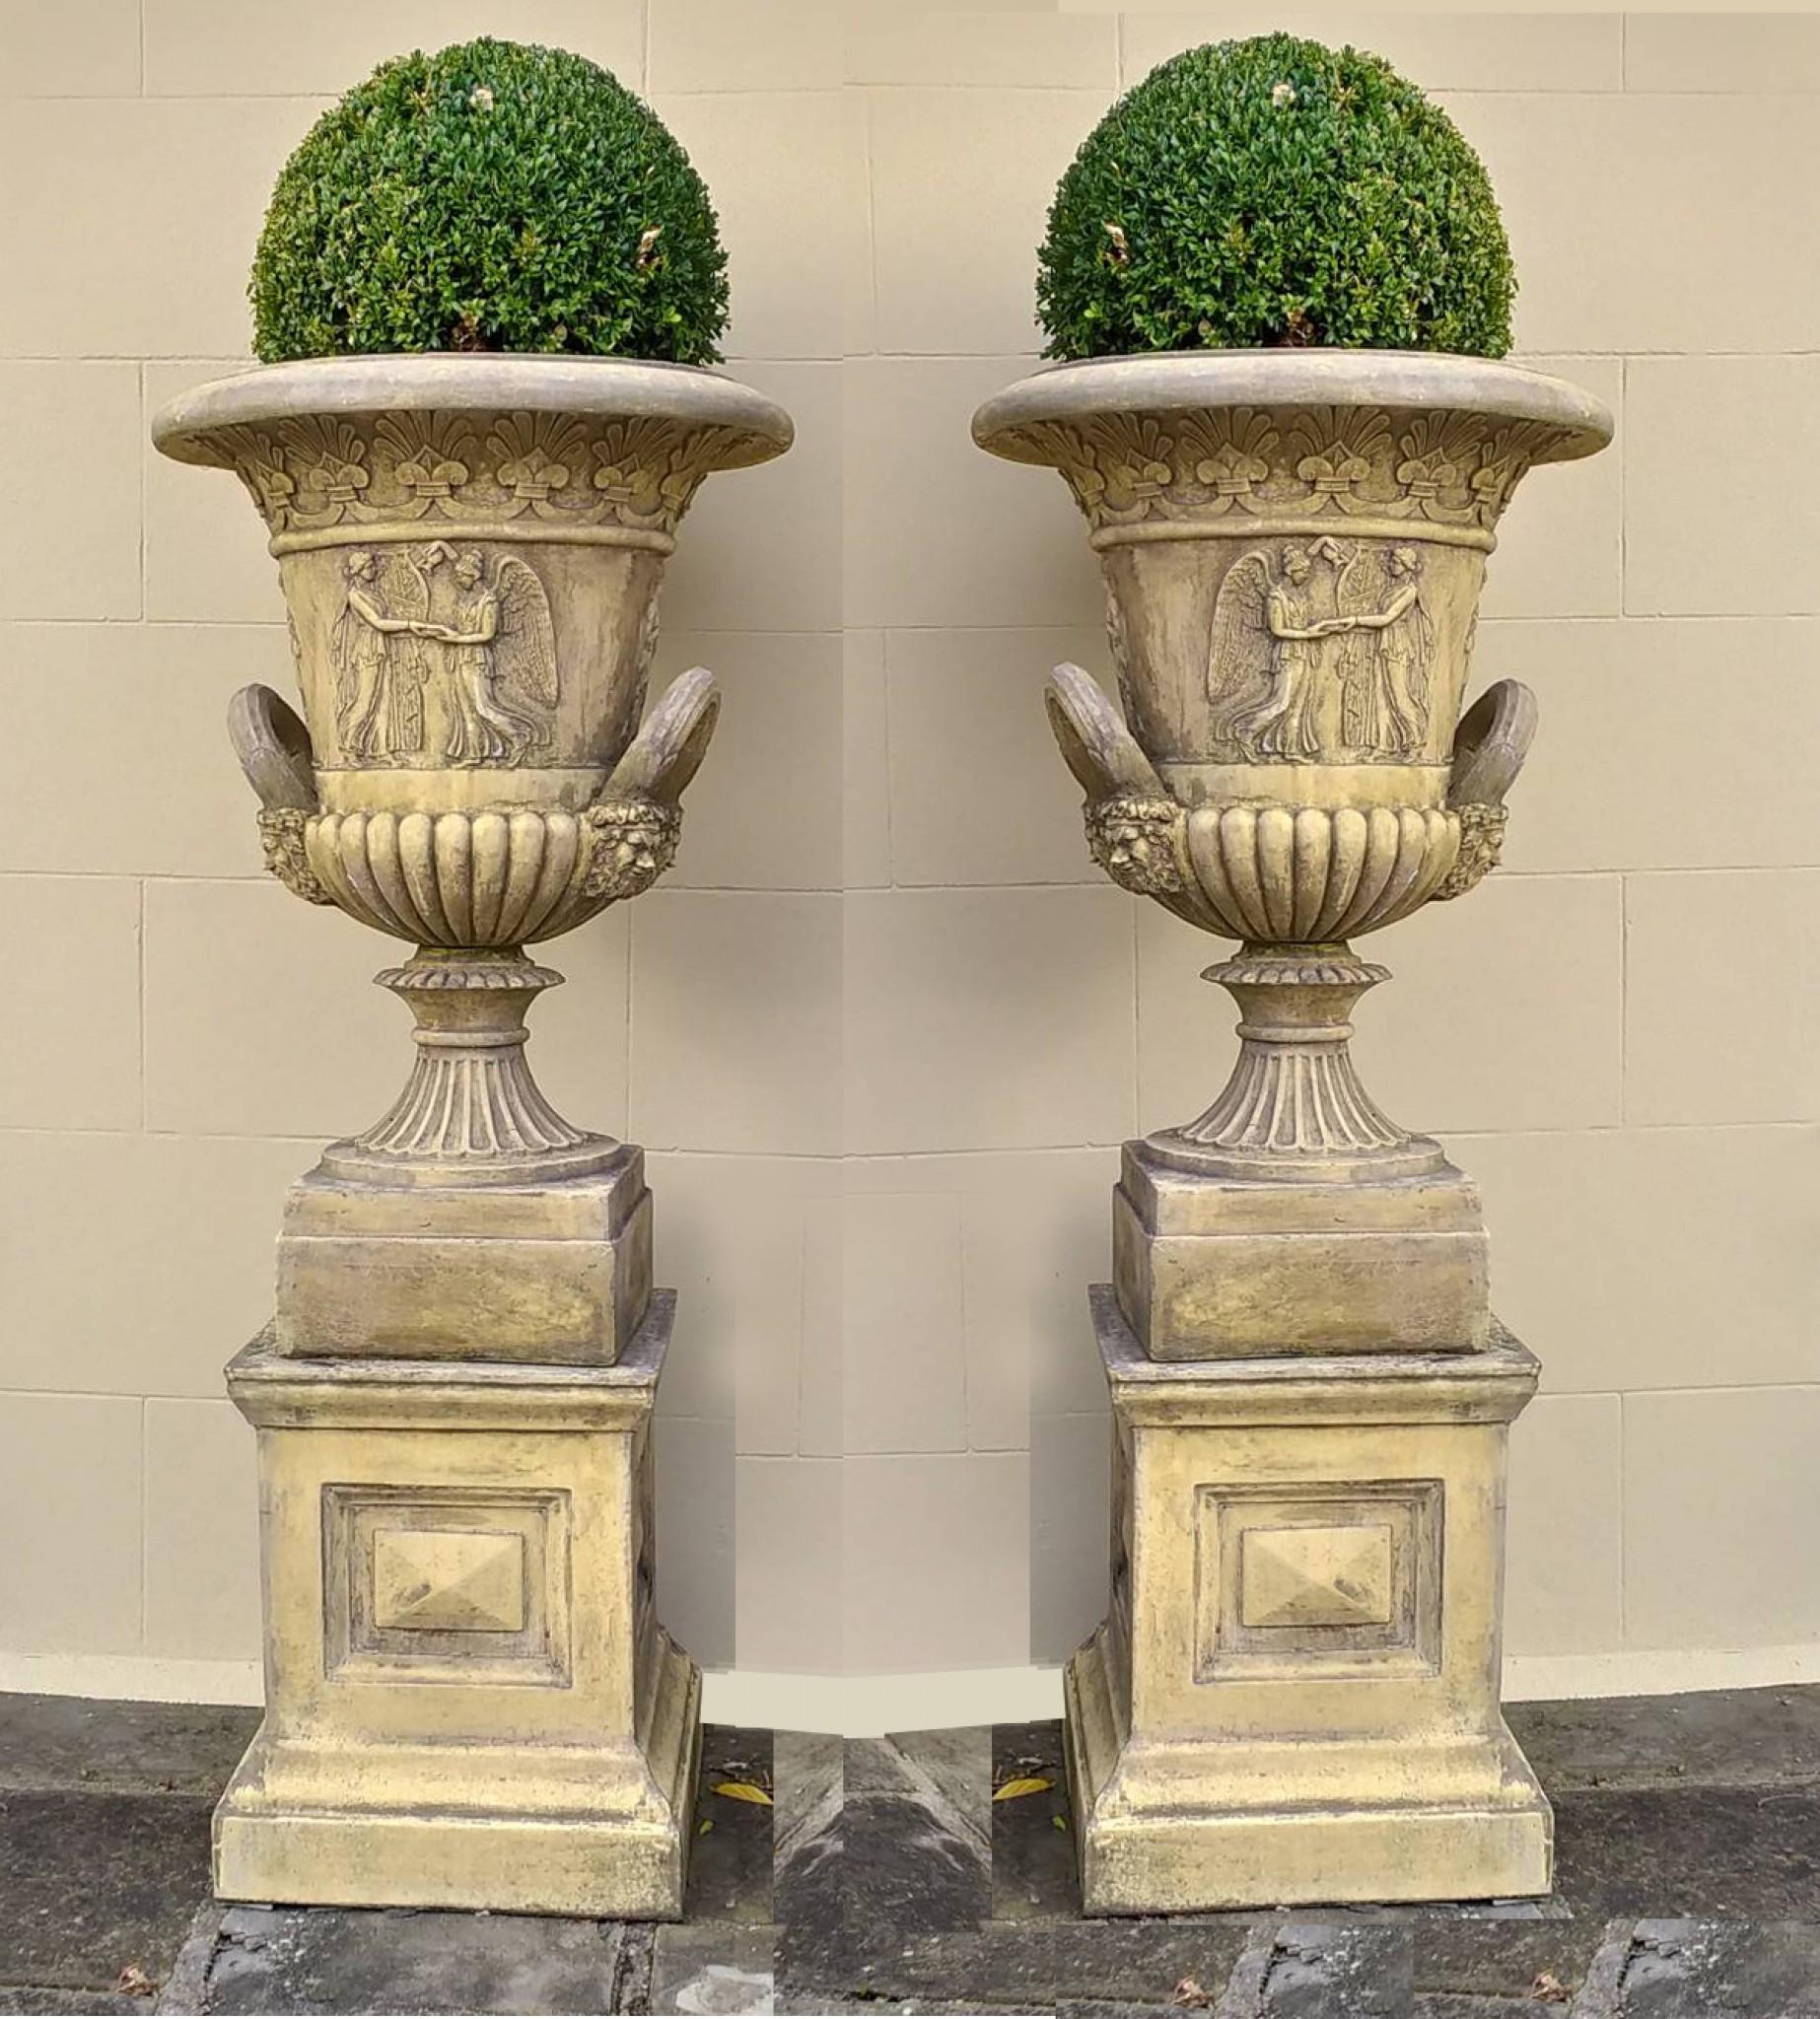 Paire de magnifiques urnes de jardin classiques de forme campana
Parfait pour obtenir un air de raffinement classique dans un jardin anglais classique.
Ceux-ci sont à la manière de Thomas Hope, qui a presque à lui seul défini le look classique de la